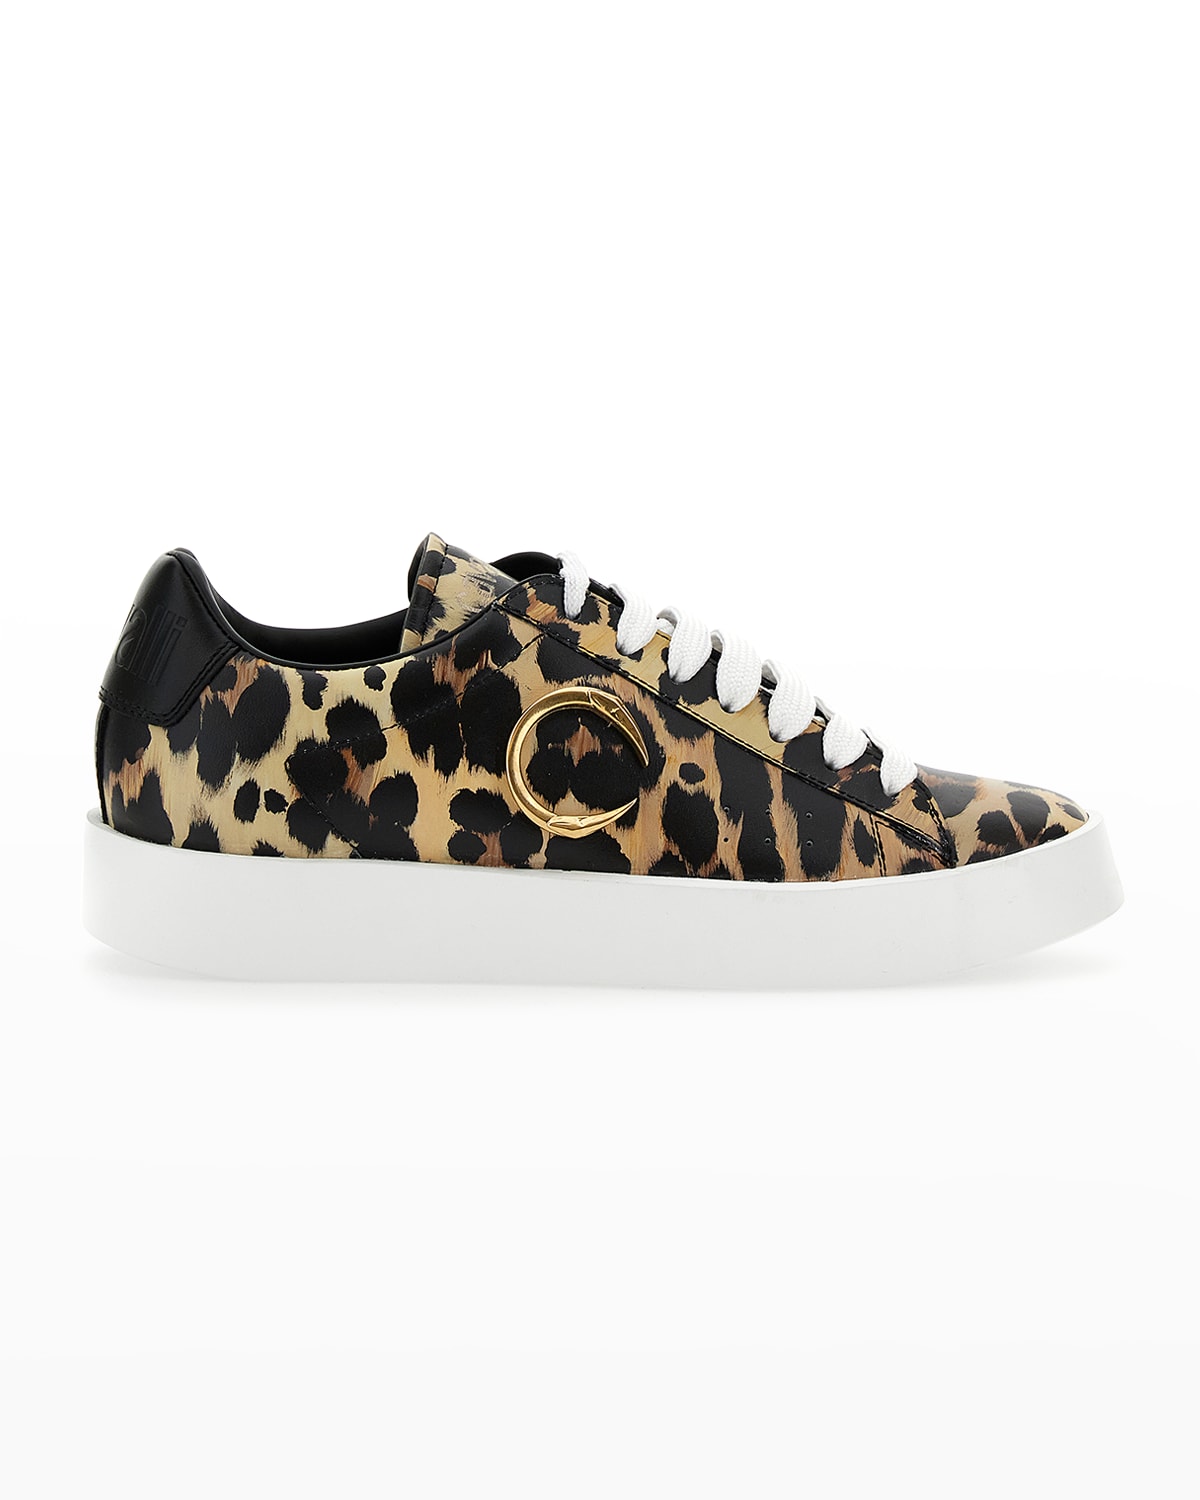 Dolce & Gabbana Metallic Leopard-Print Low-Top Sneakers | Neiman Marcus